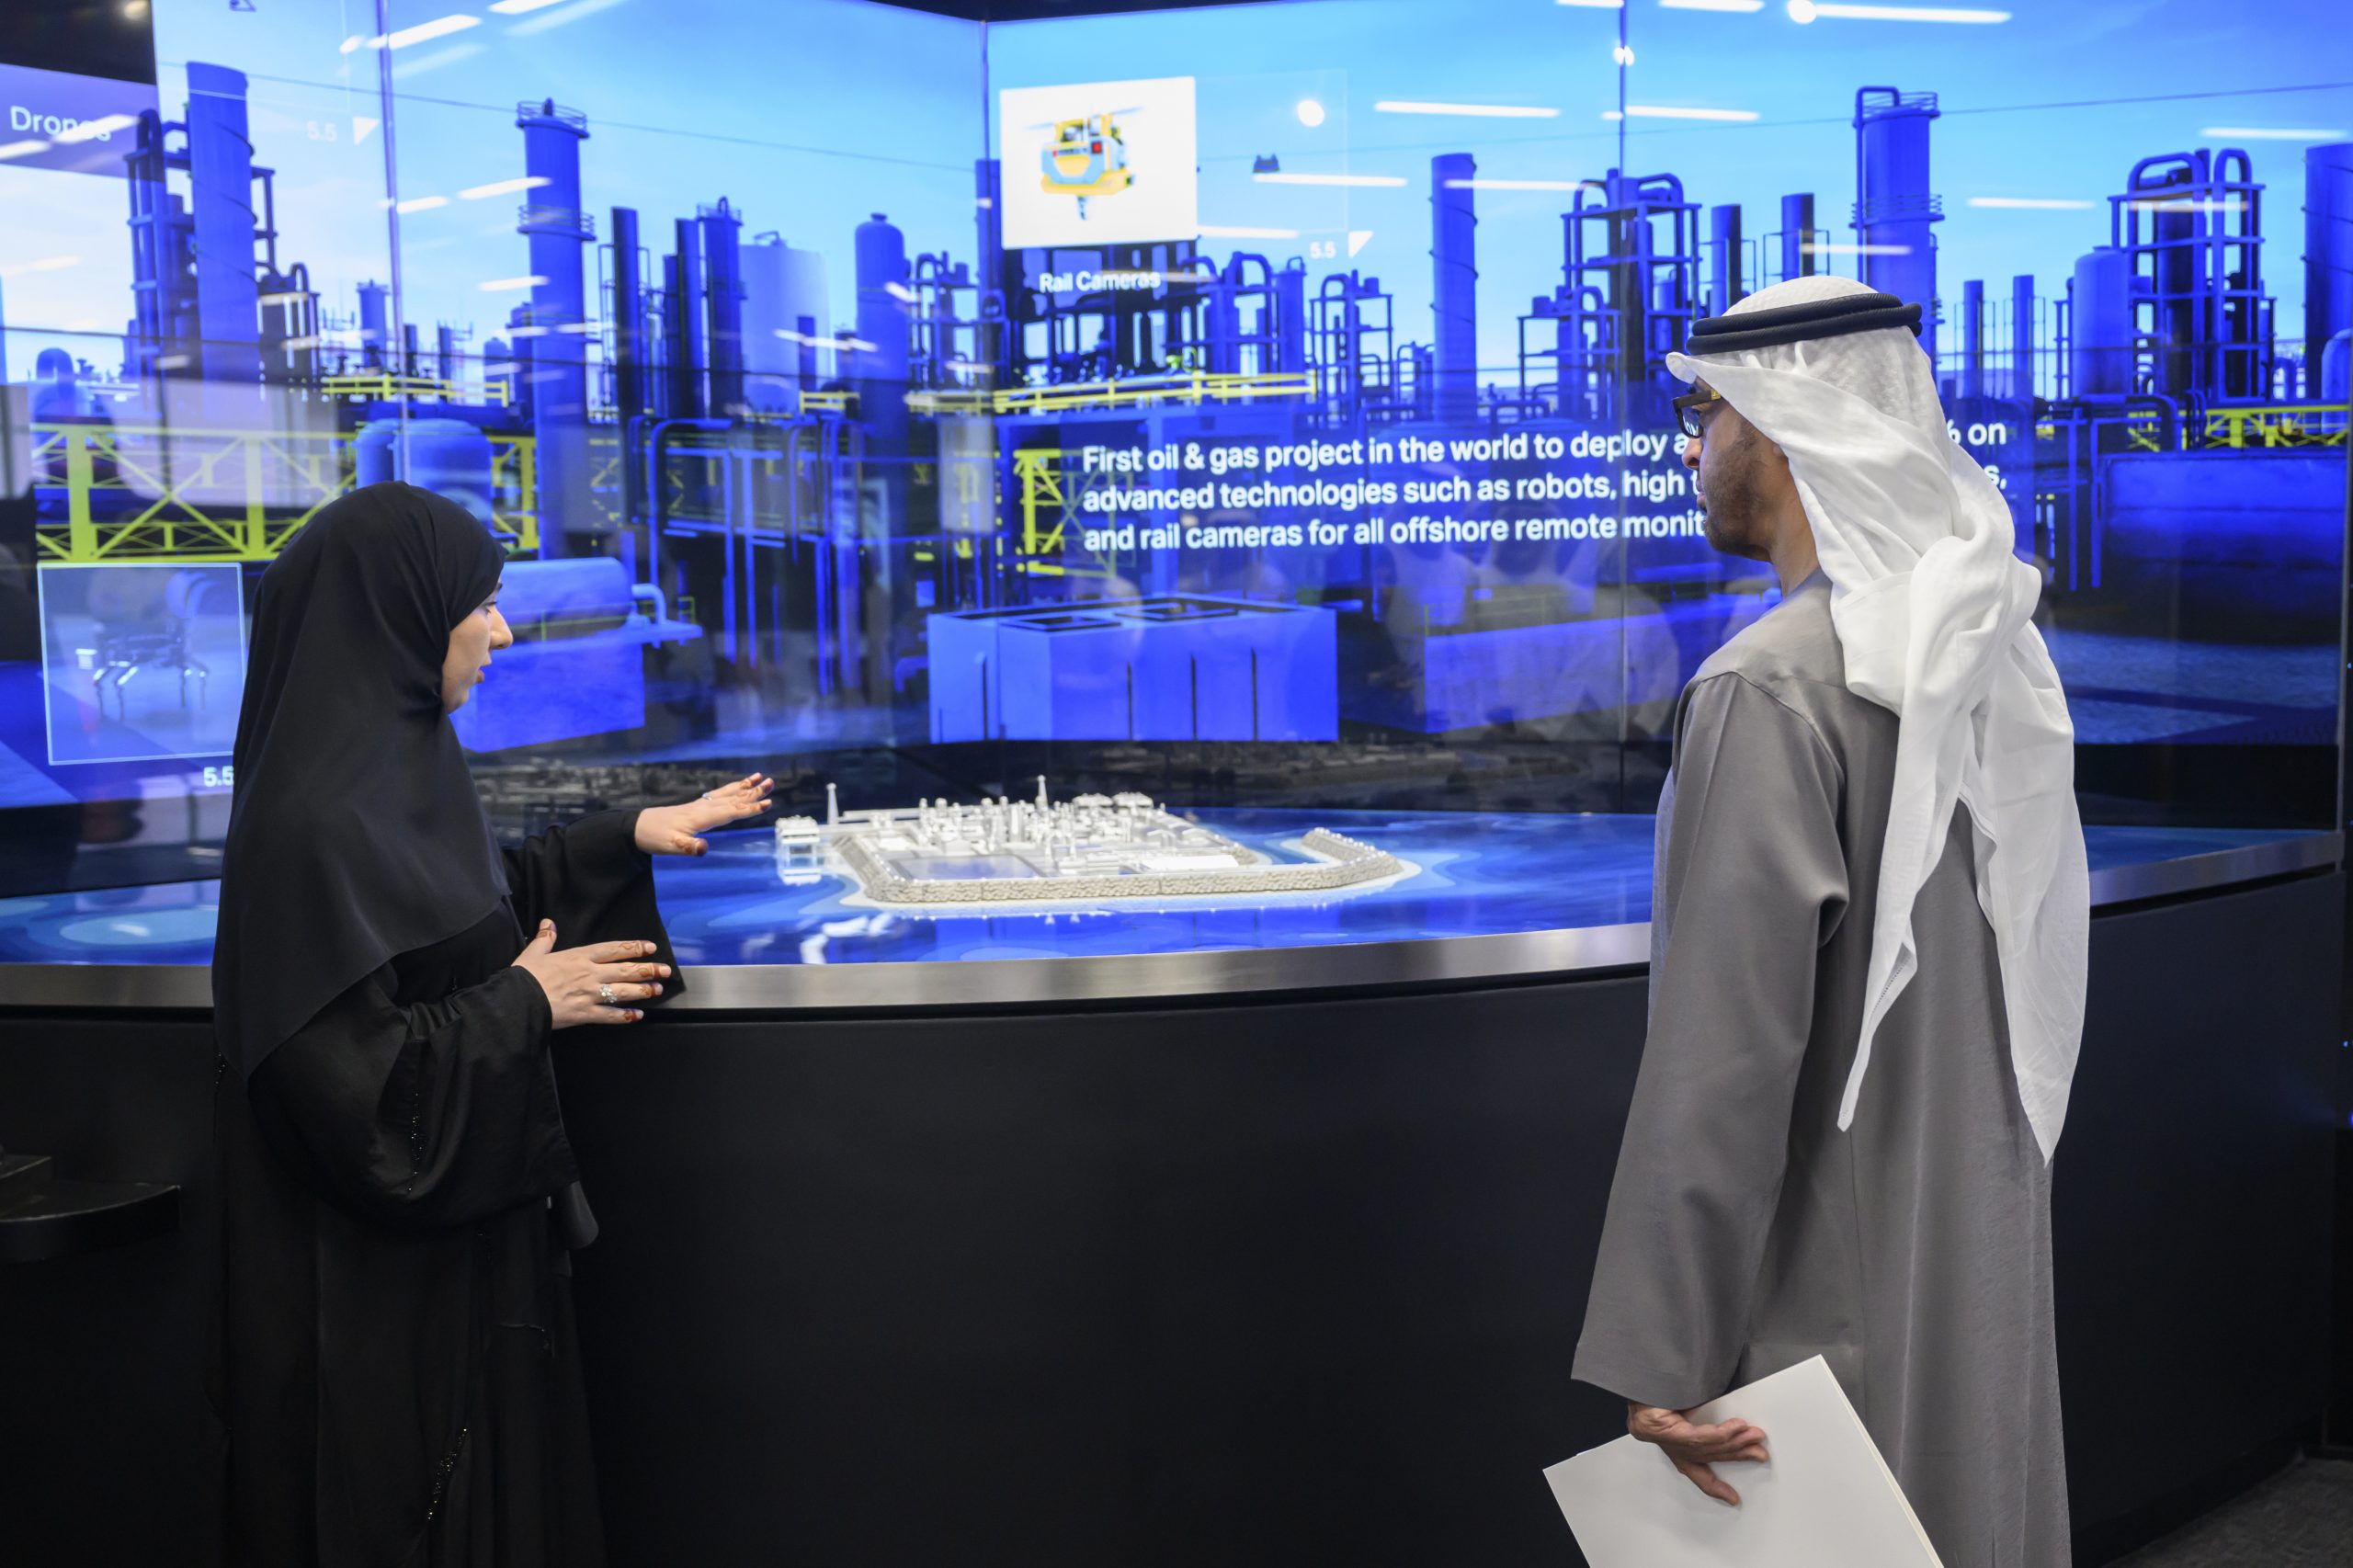 رئيس الإمارات يطلع على خطط وإستراتيجيات شركة أدنوك - الصورة من وام